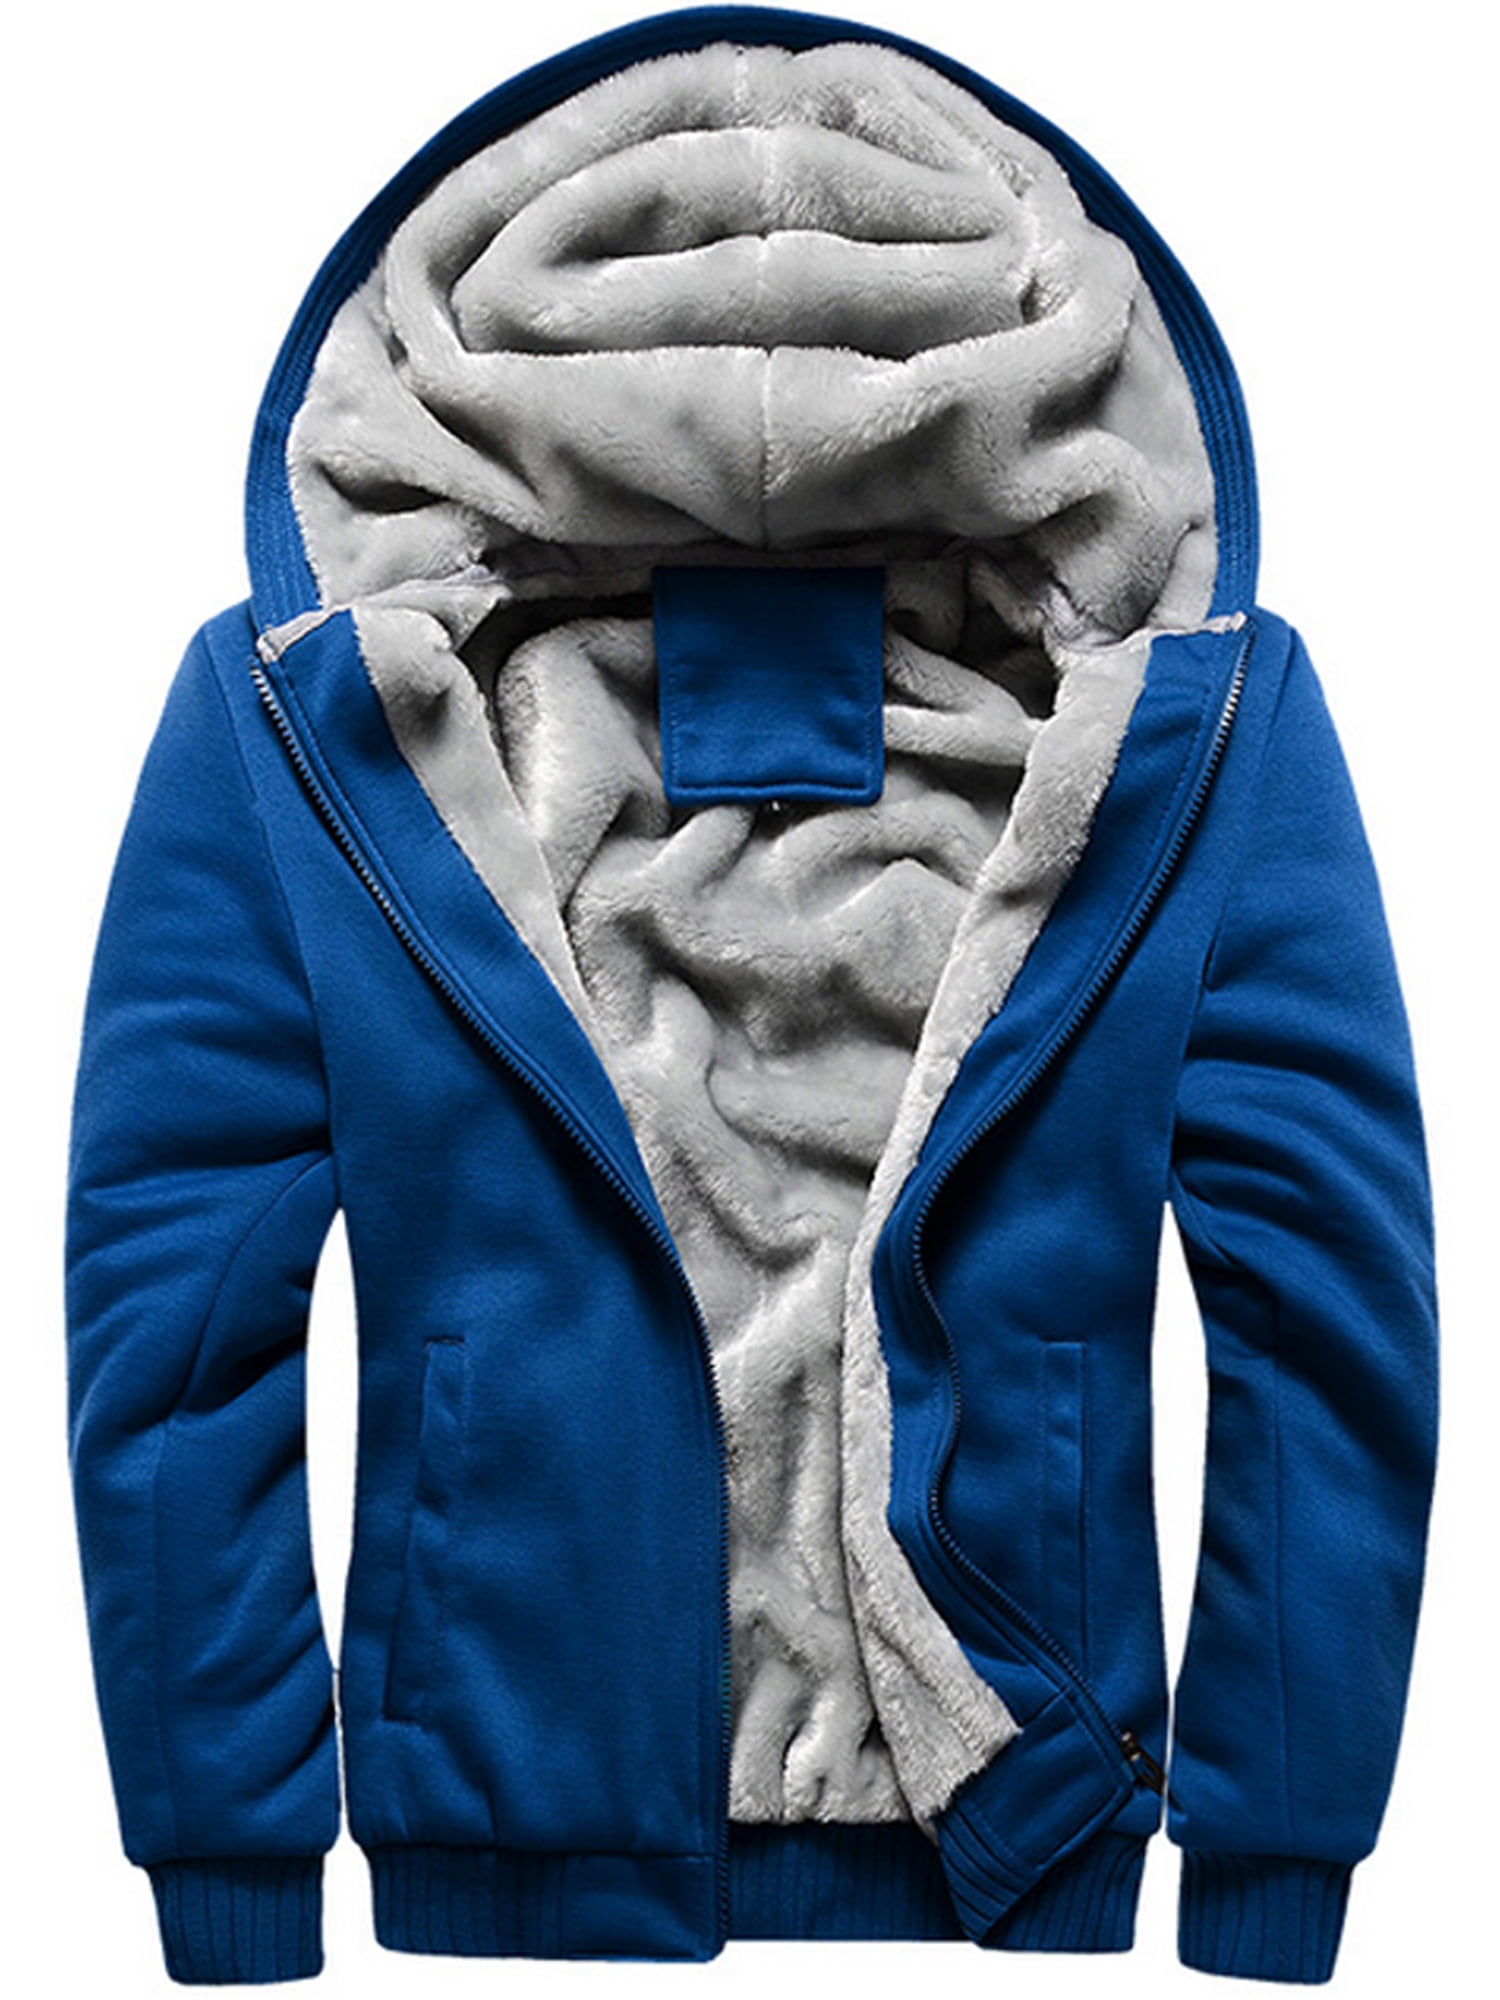 Tops Hoodie Fleeces Men's Jacket Hoody Sweater Winter Warm Sweatshirts Pullover